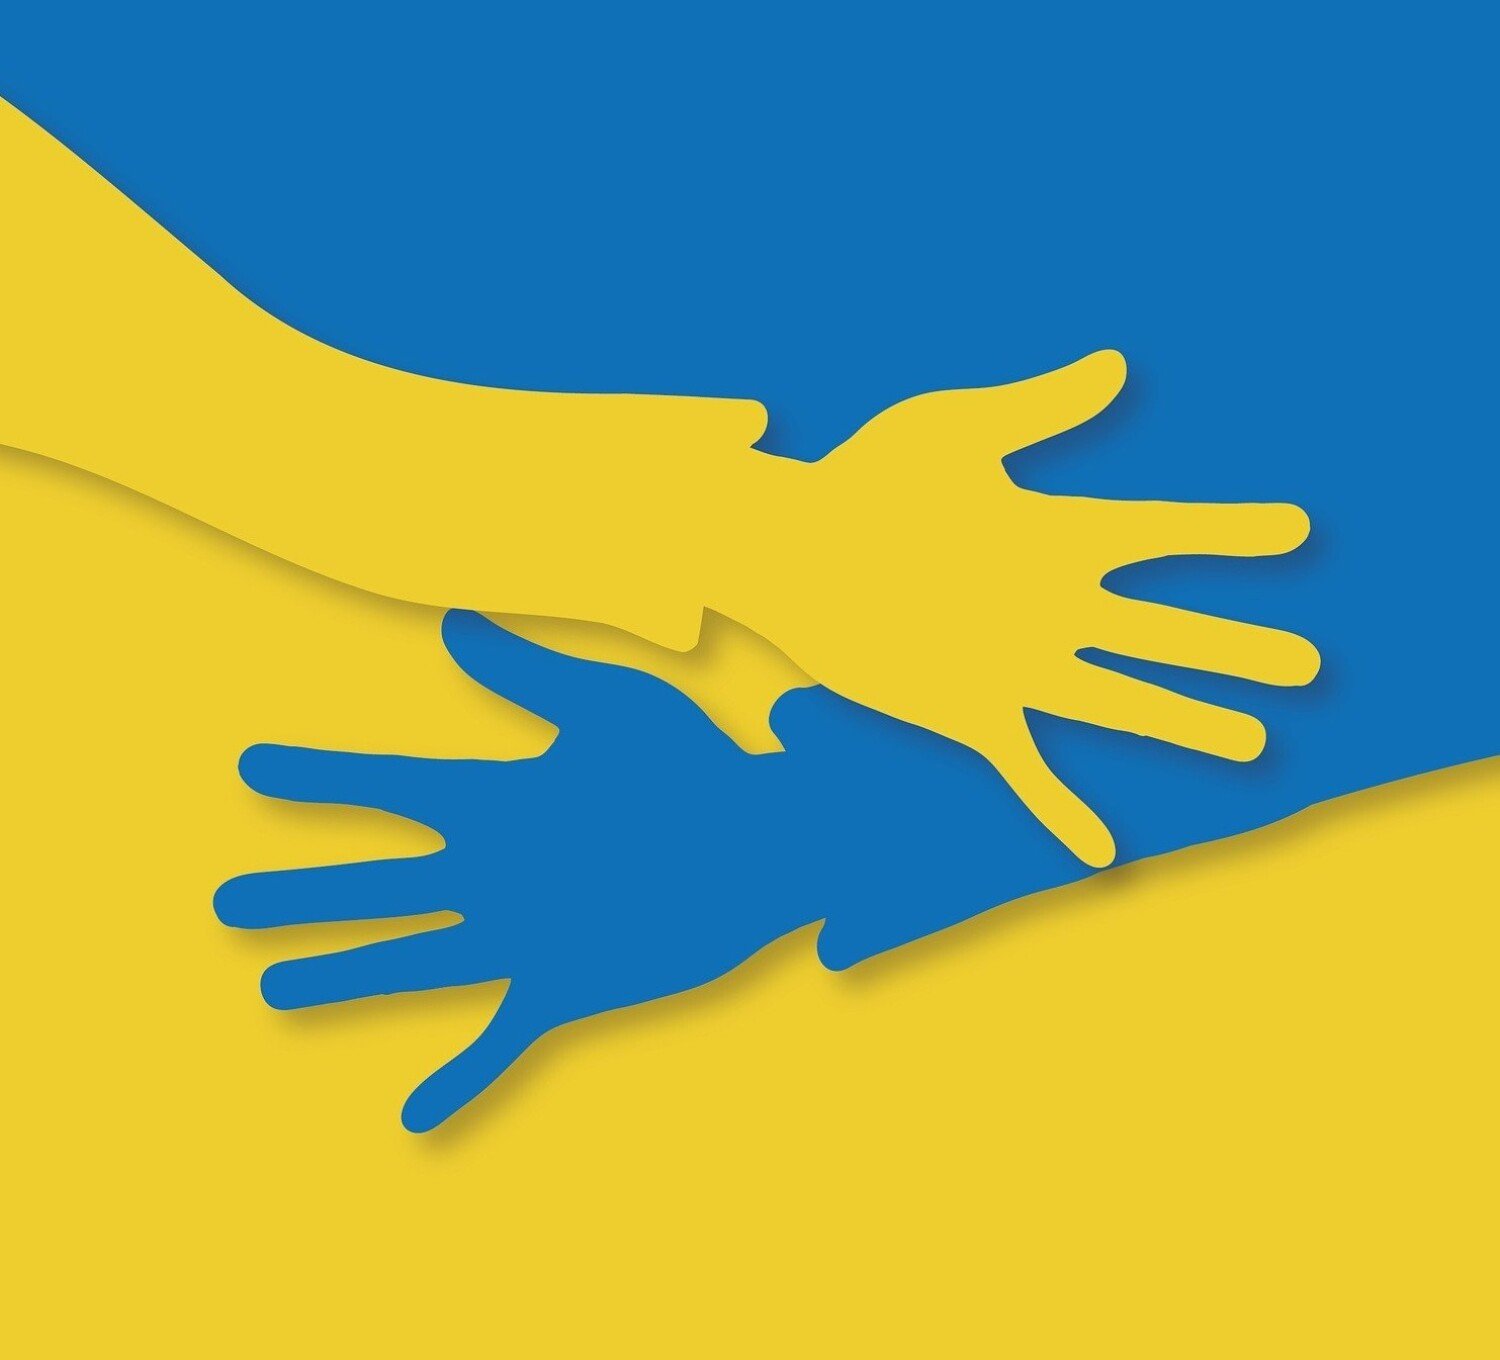 Bezpłatna pomoc psychologiczna dla obywateli Ukrainy w Cieszynie. Można  skorzystać z usług ukraińskiego psychologa | Cieszyn Nasze Miasto